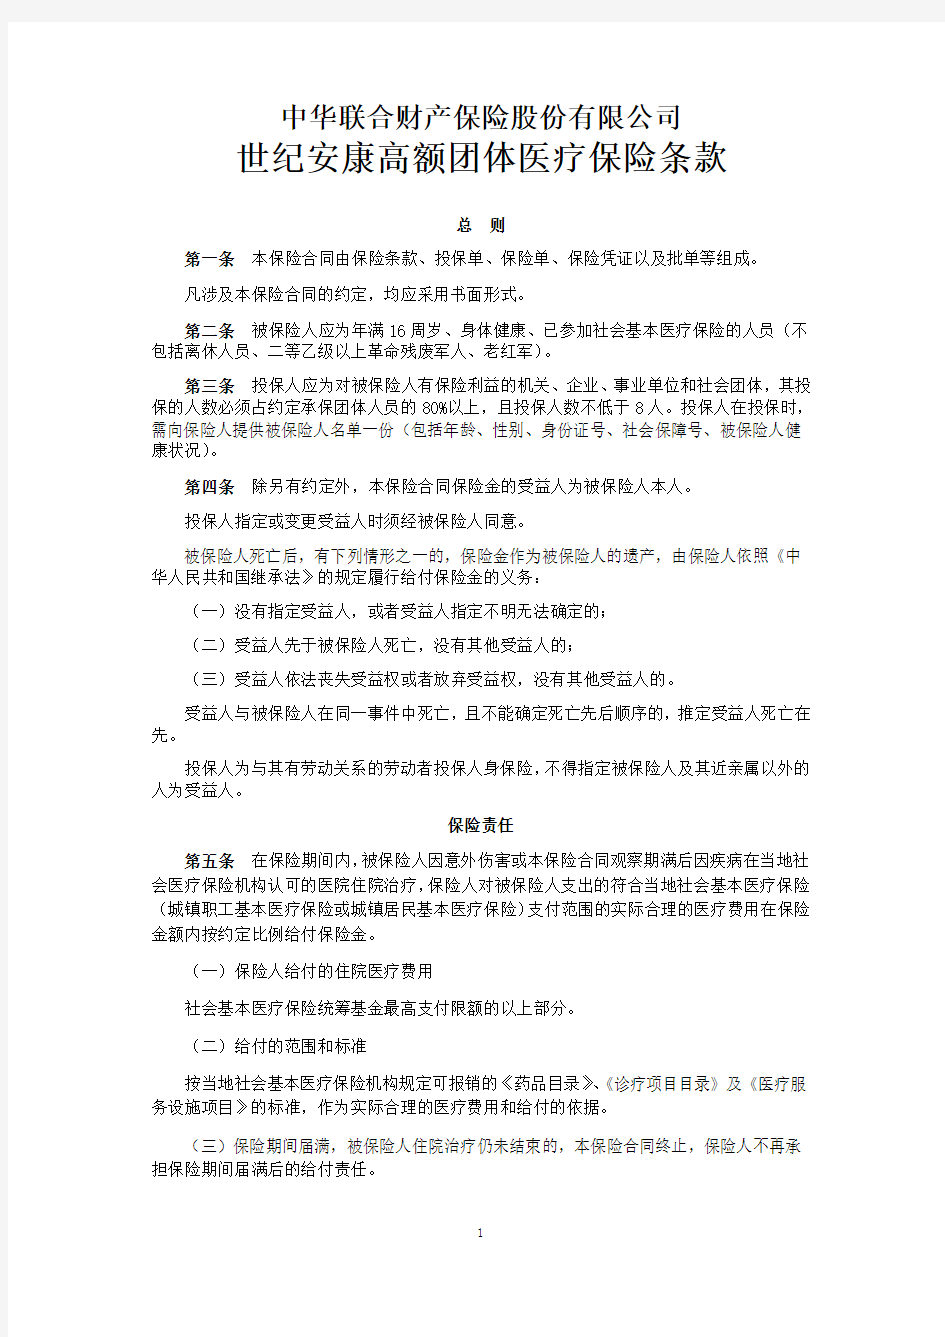 中华联合(备案)[2009]N52号-世纪安康高额团体医疗保险条款